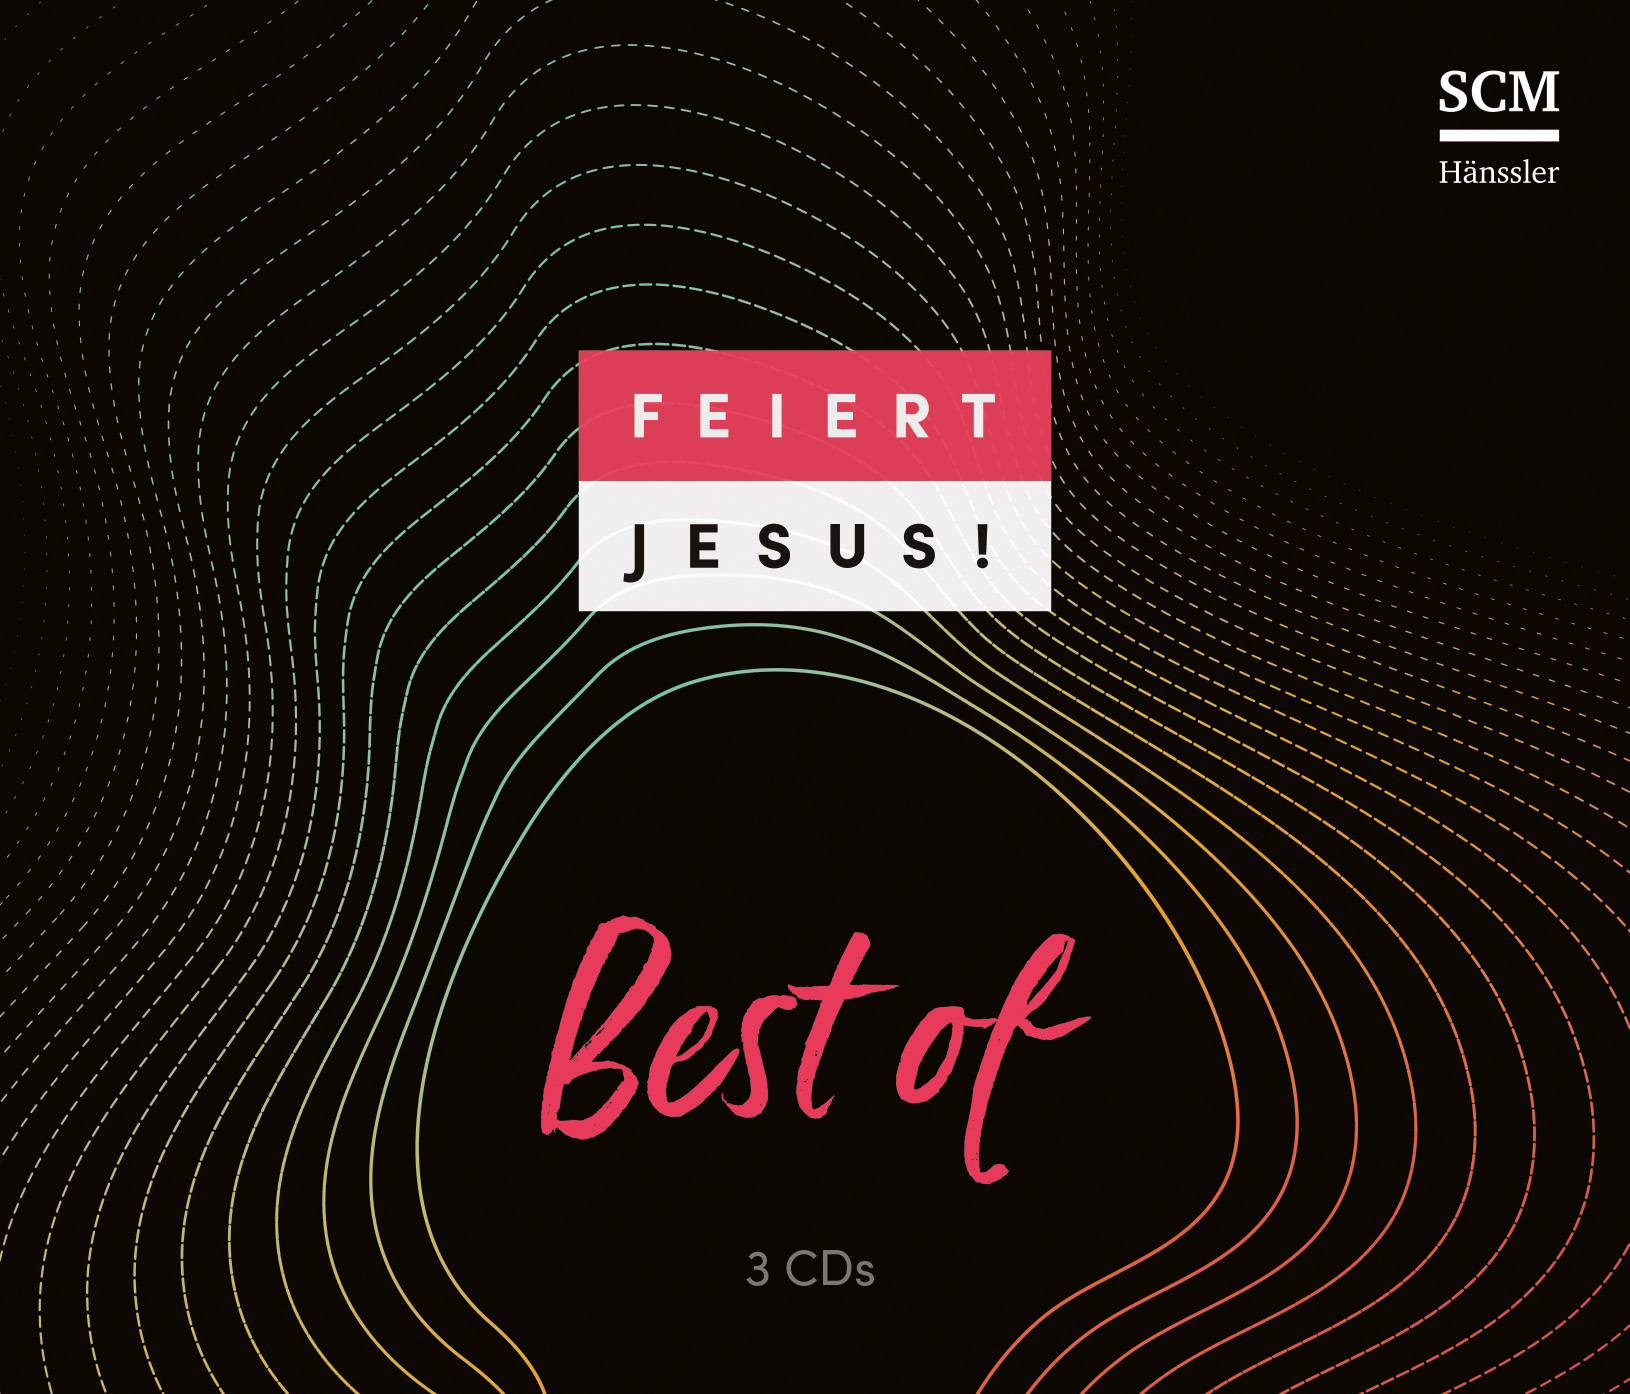 Feiert Jesus! Best of CD